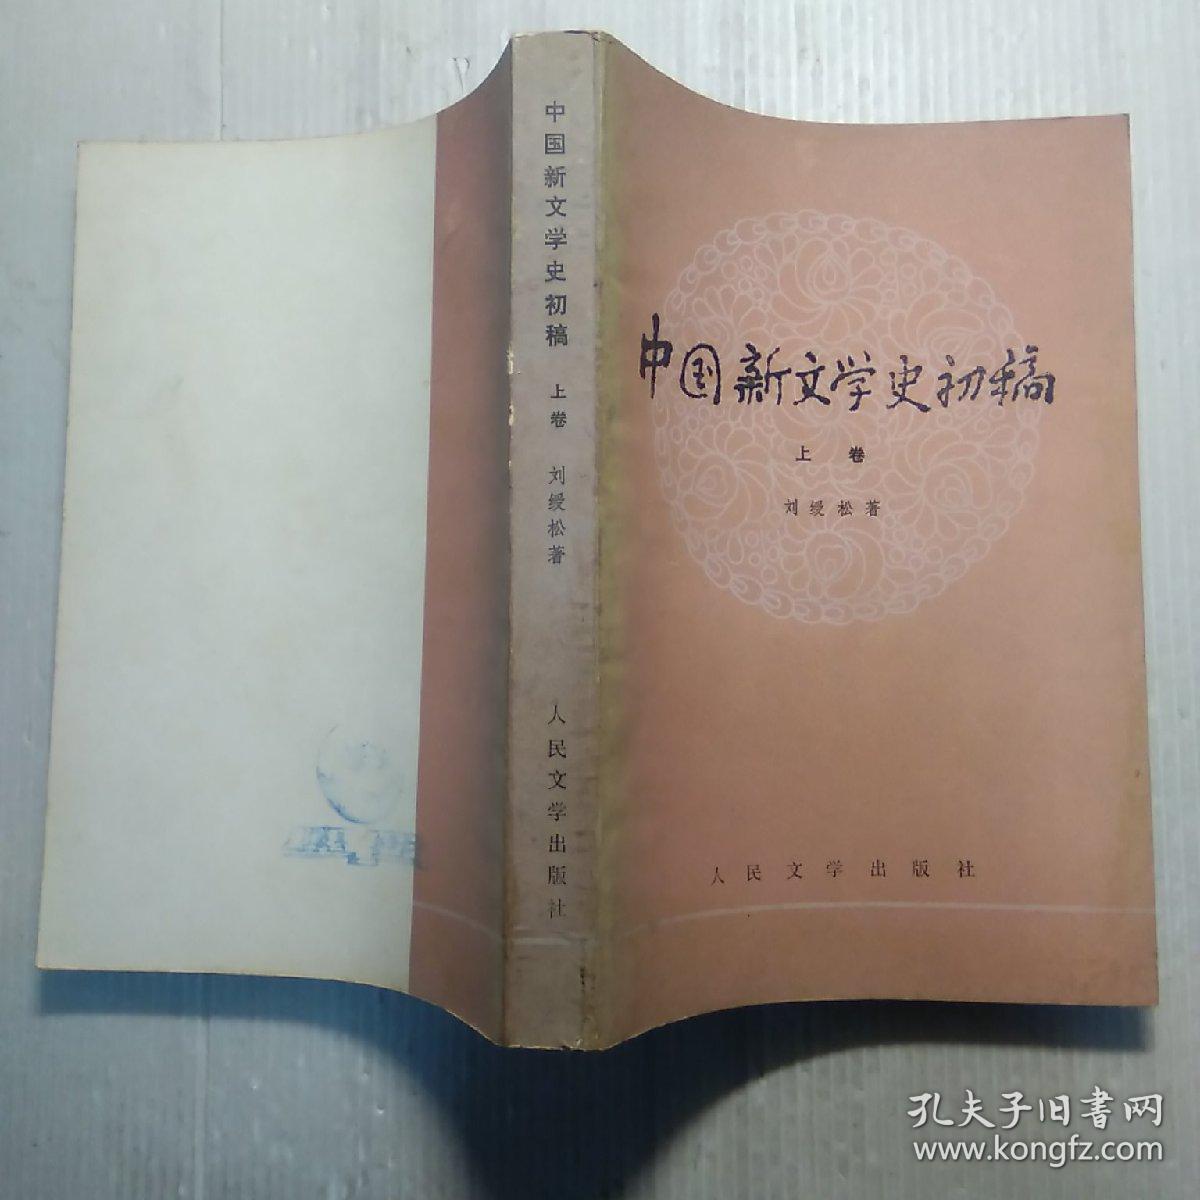 中国新文学史初稿 上